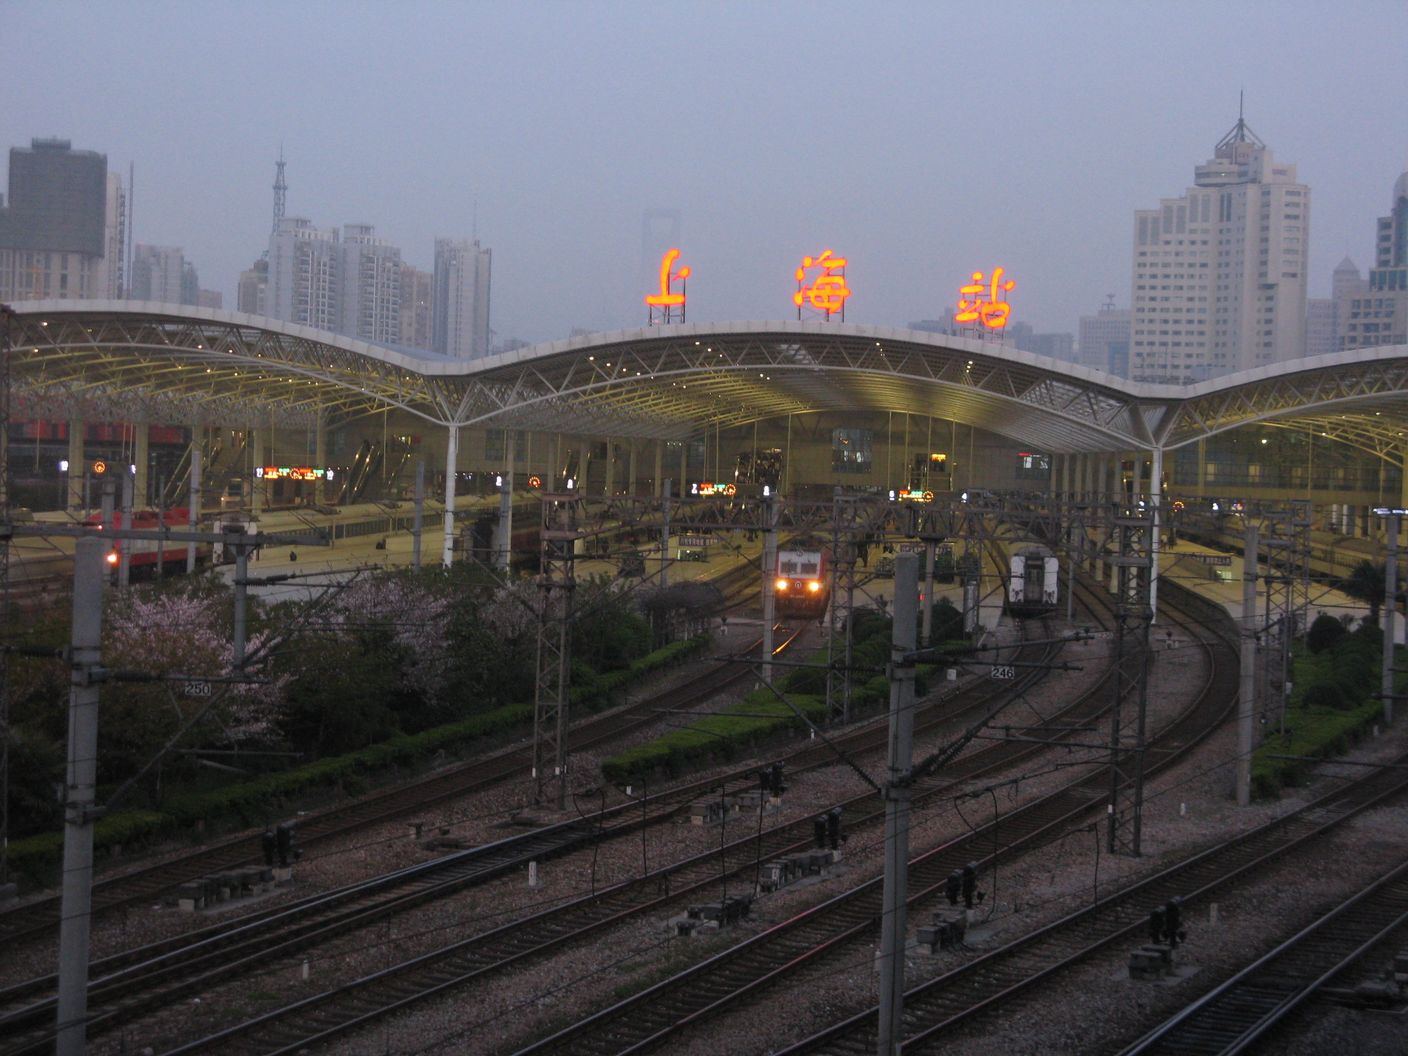 感觉上海站的站台和建筑都好破啊!跟其他两个火车站没法比